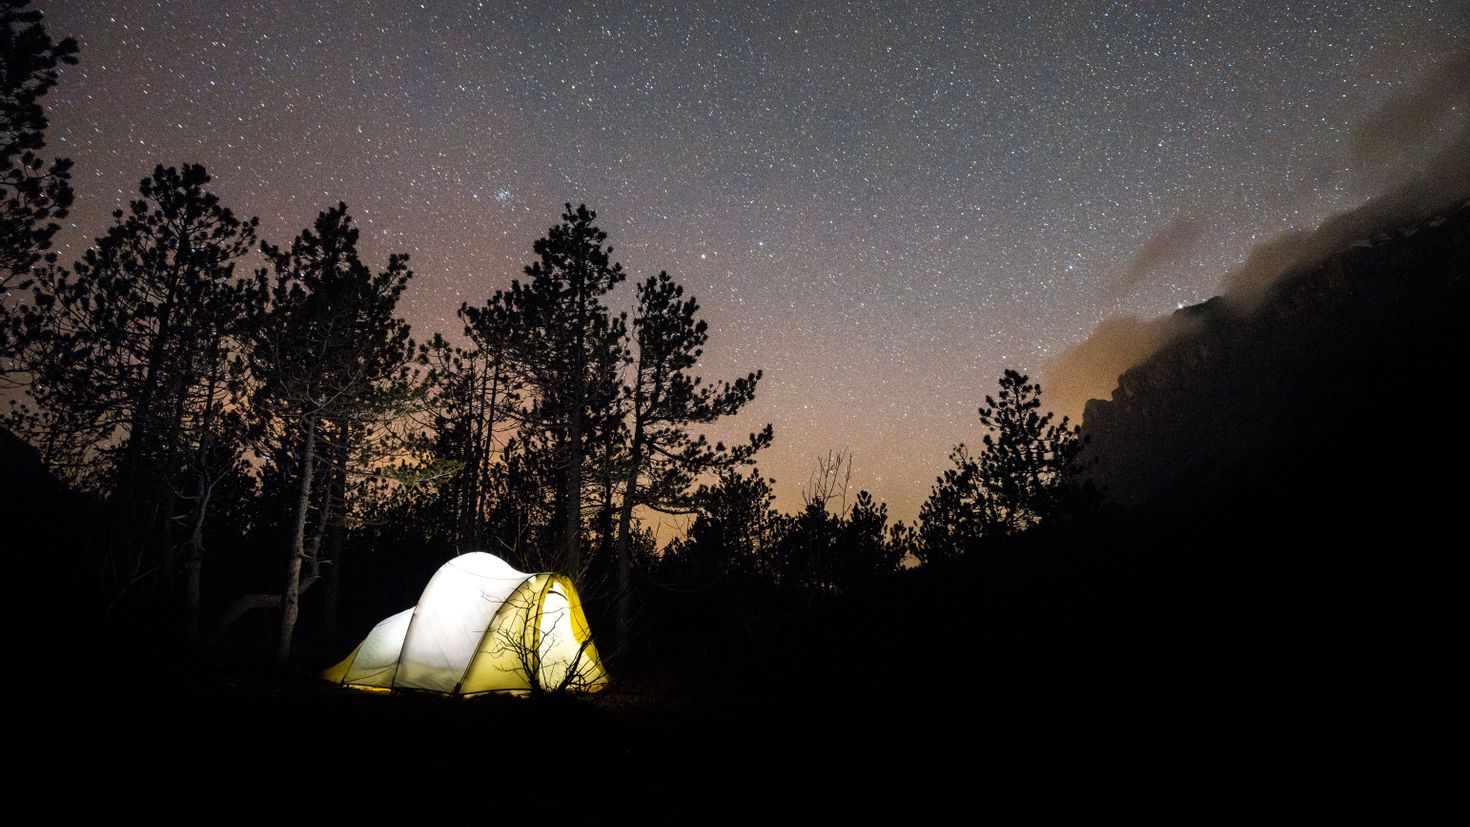 Night camp. Палатка. Палатка в лесу. Палатка ночью. Палатка в лесу ночью.